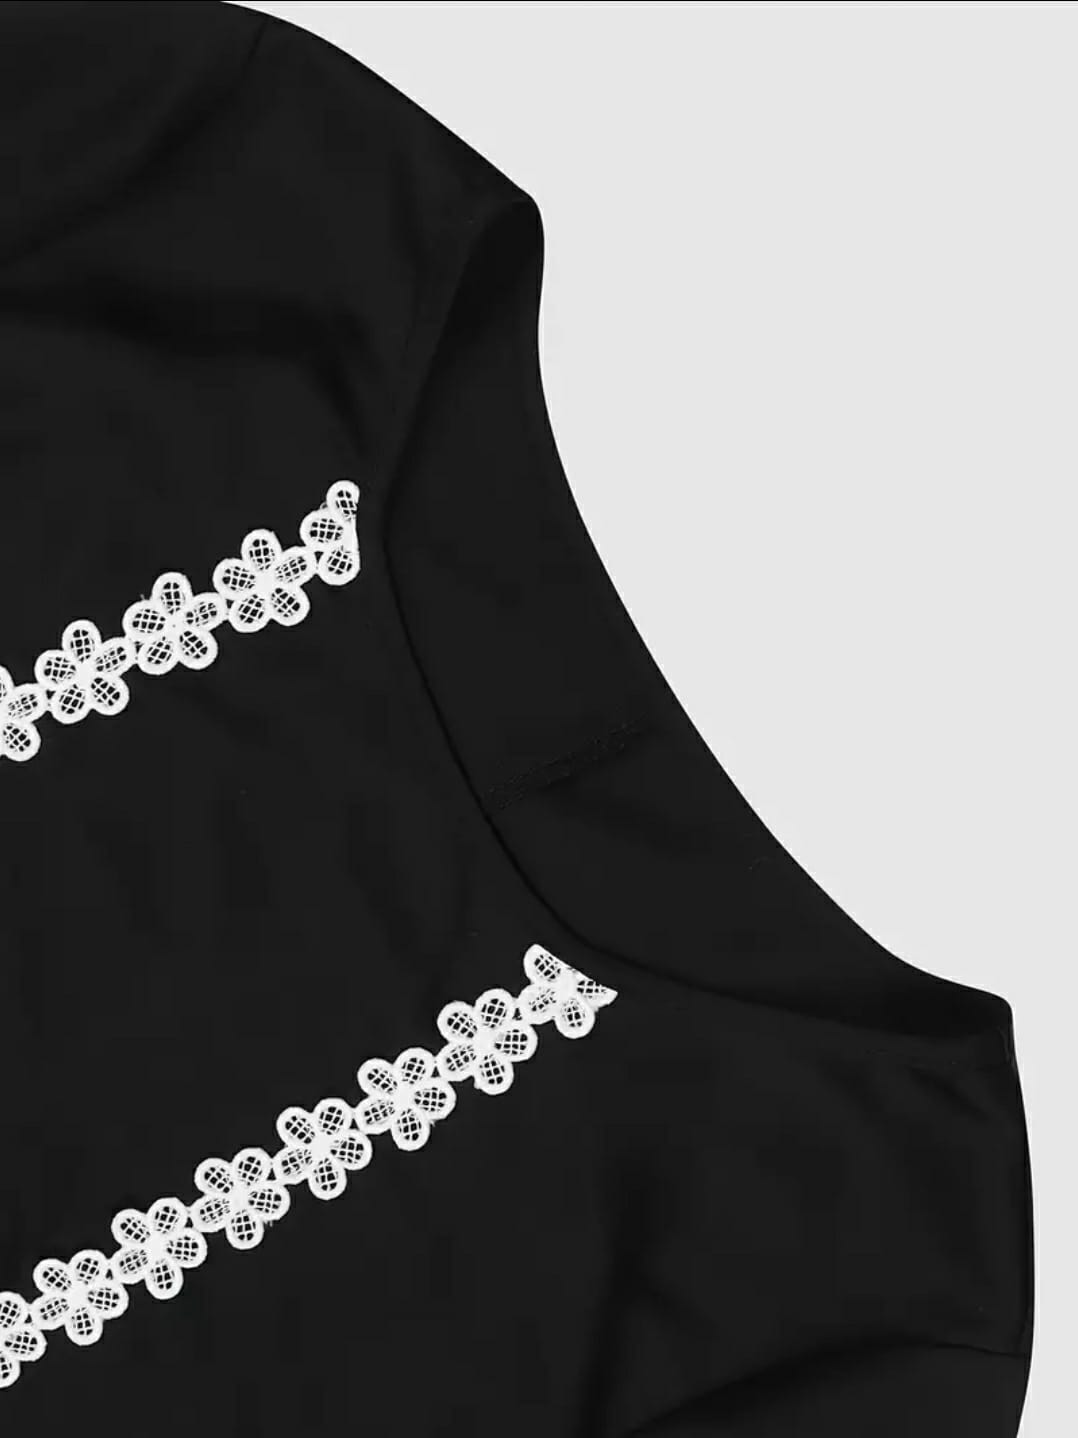 Samaira's Black Robe Abaya